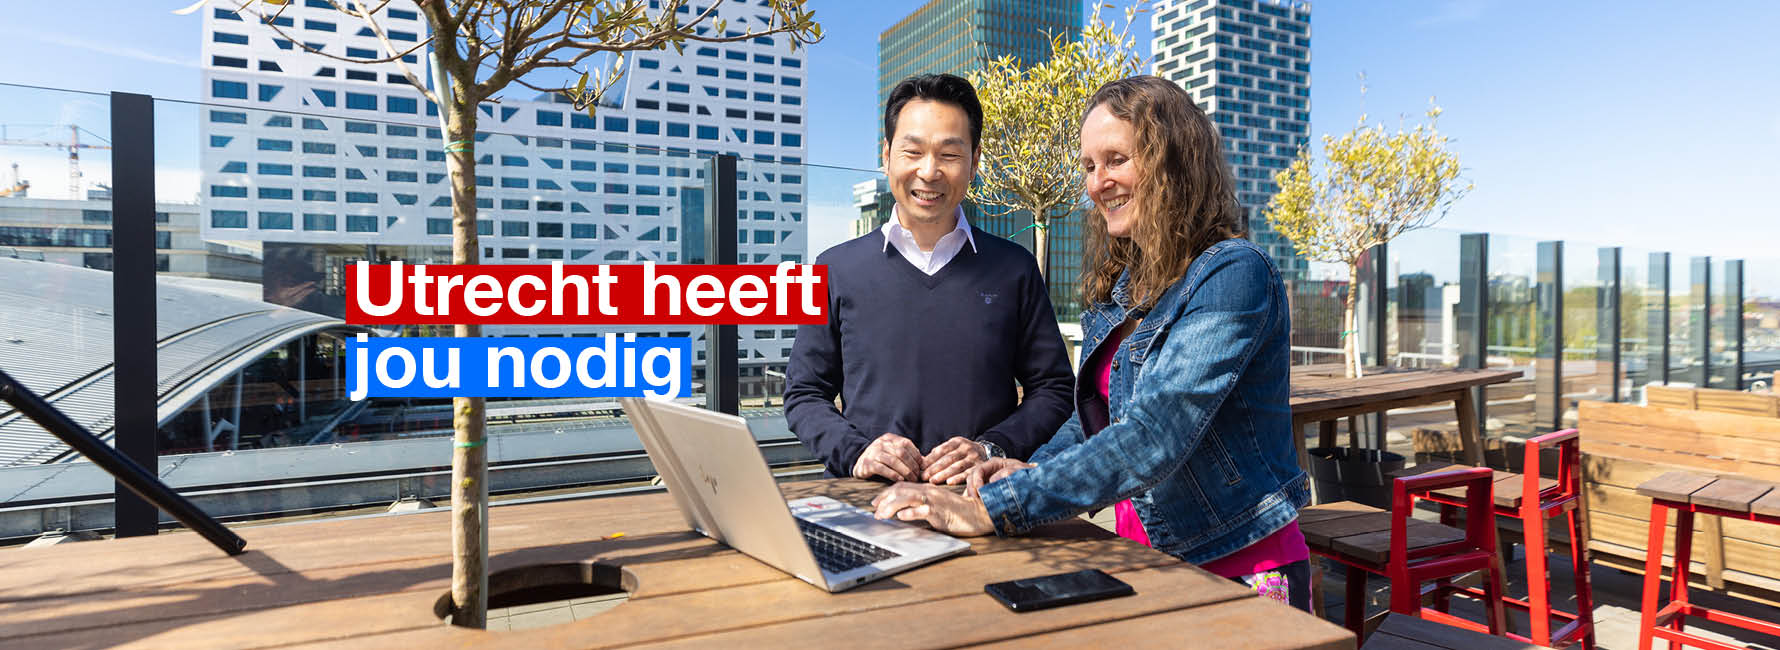 Twee mensen staan op een dakterras met een laptop. In beeld staat de tekst Utrecht heeft jou nodig.